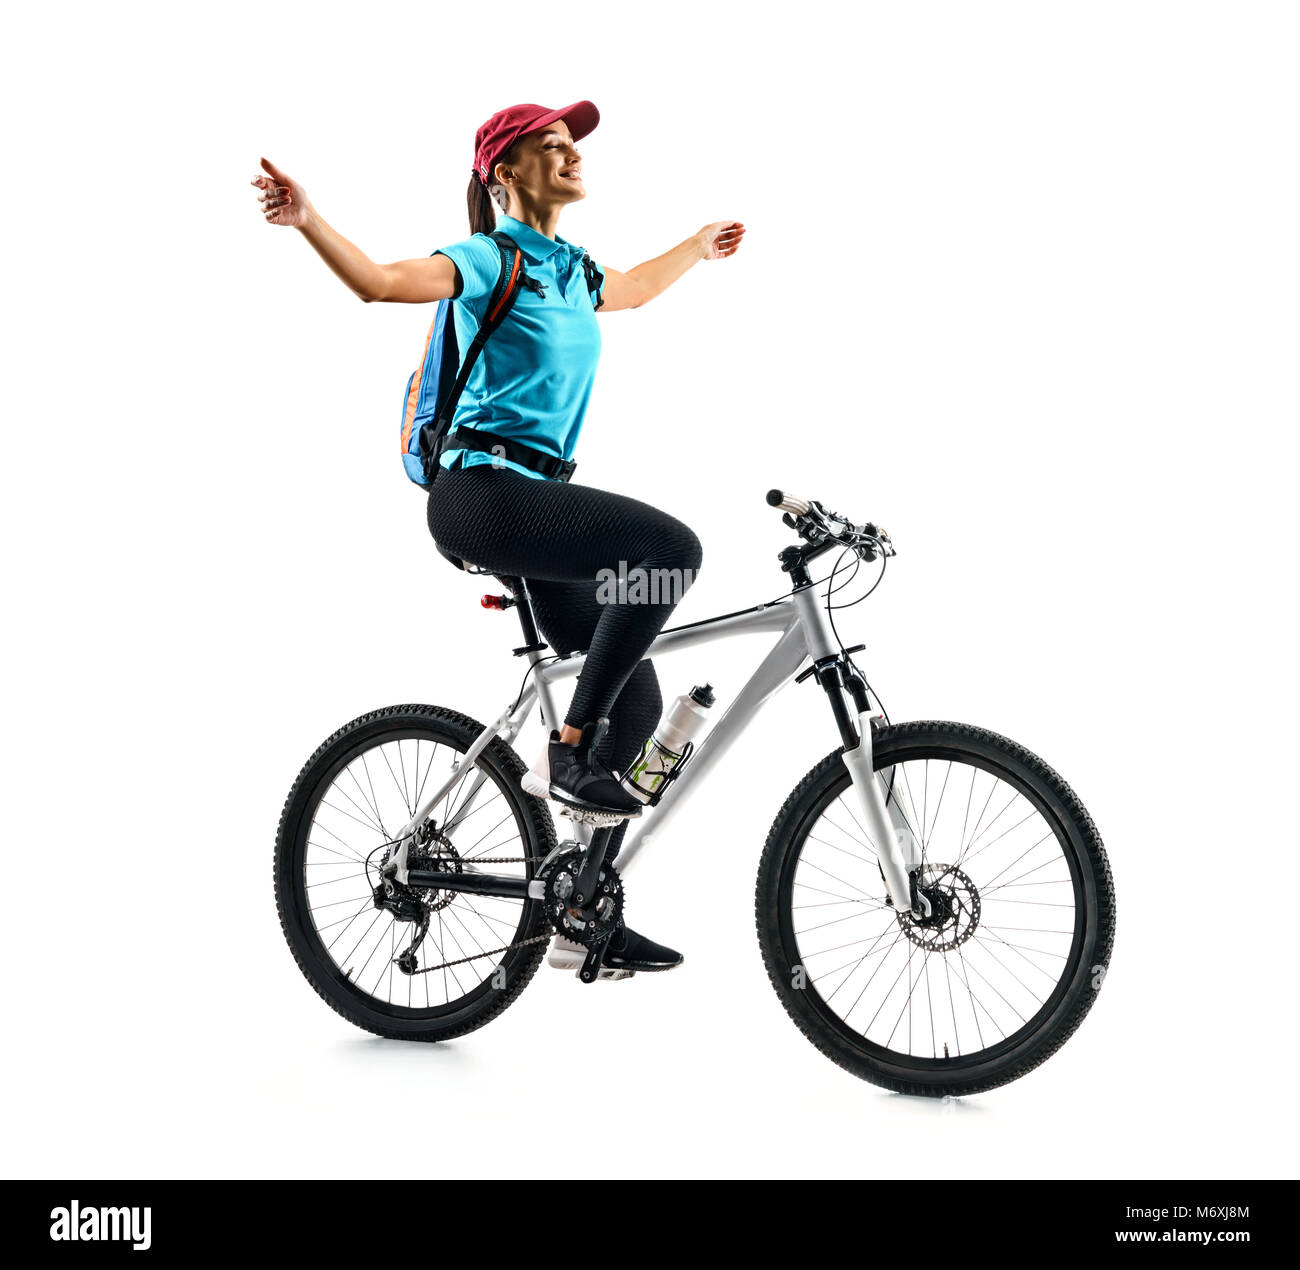 Cycliste en bleu t-shirt équitation le vélo en silhouette sur fond blanc. Le mouvement dynamique. Sport et mode de vie sain Banque D'Images